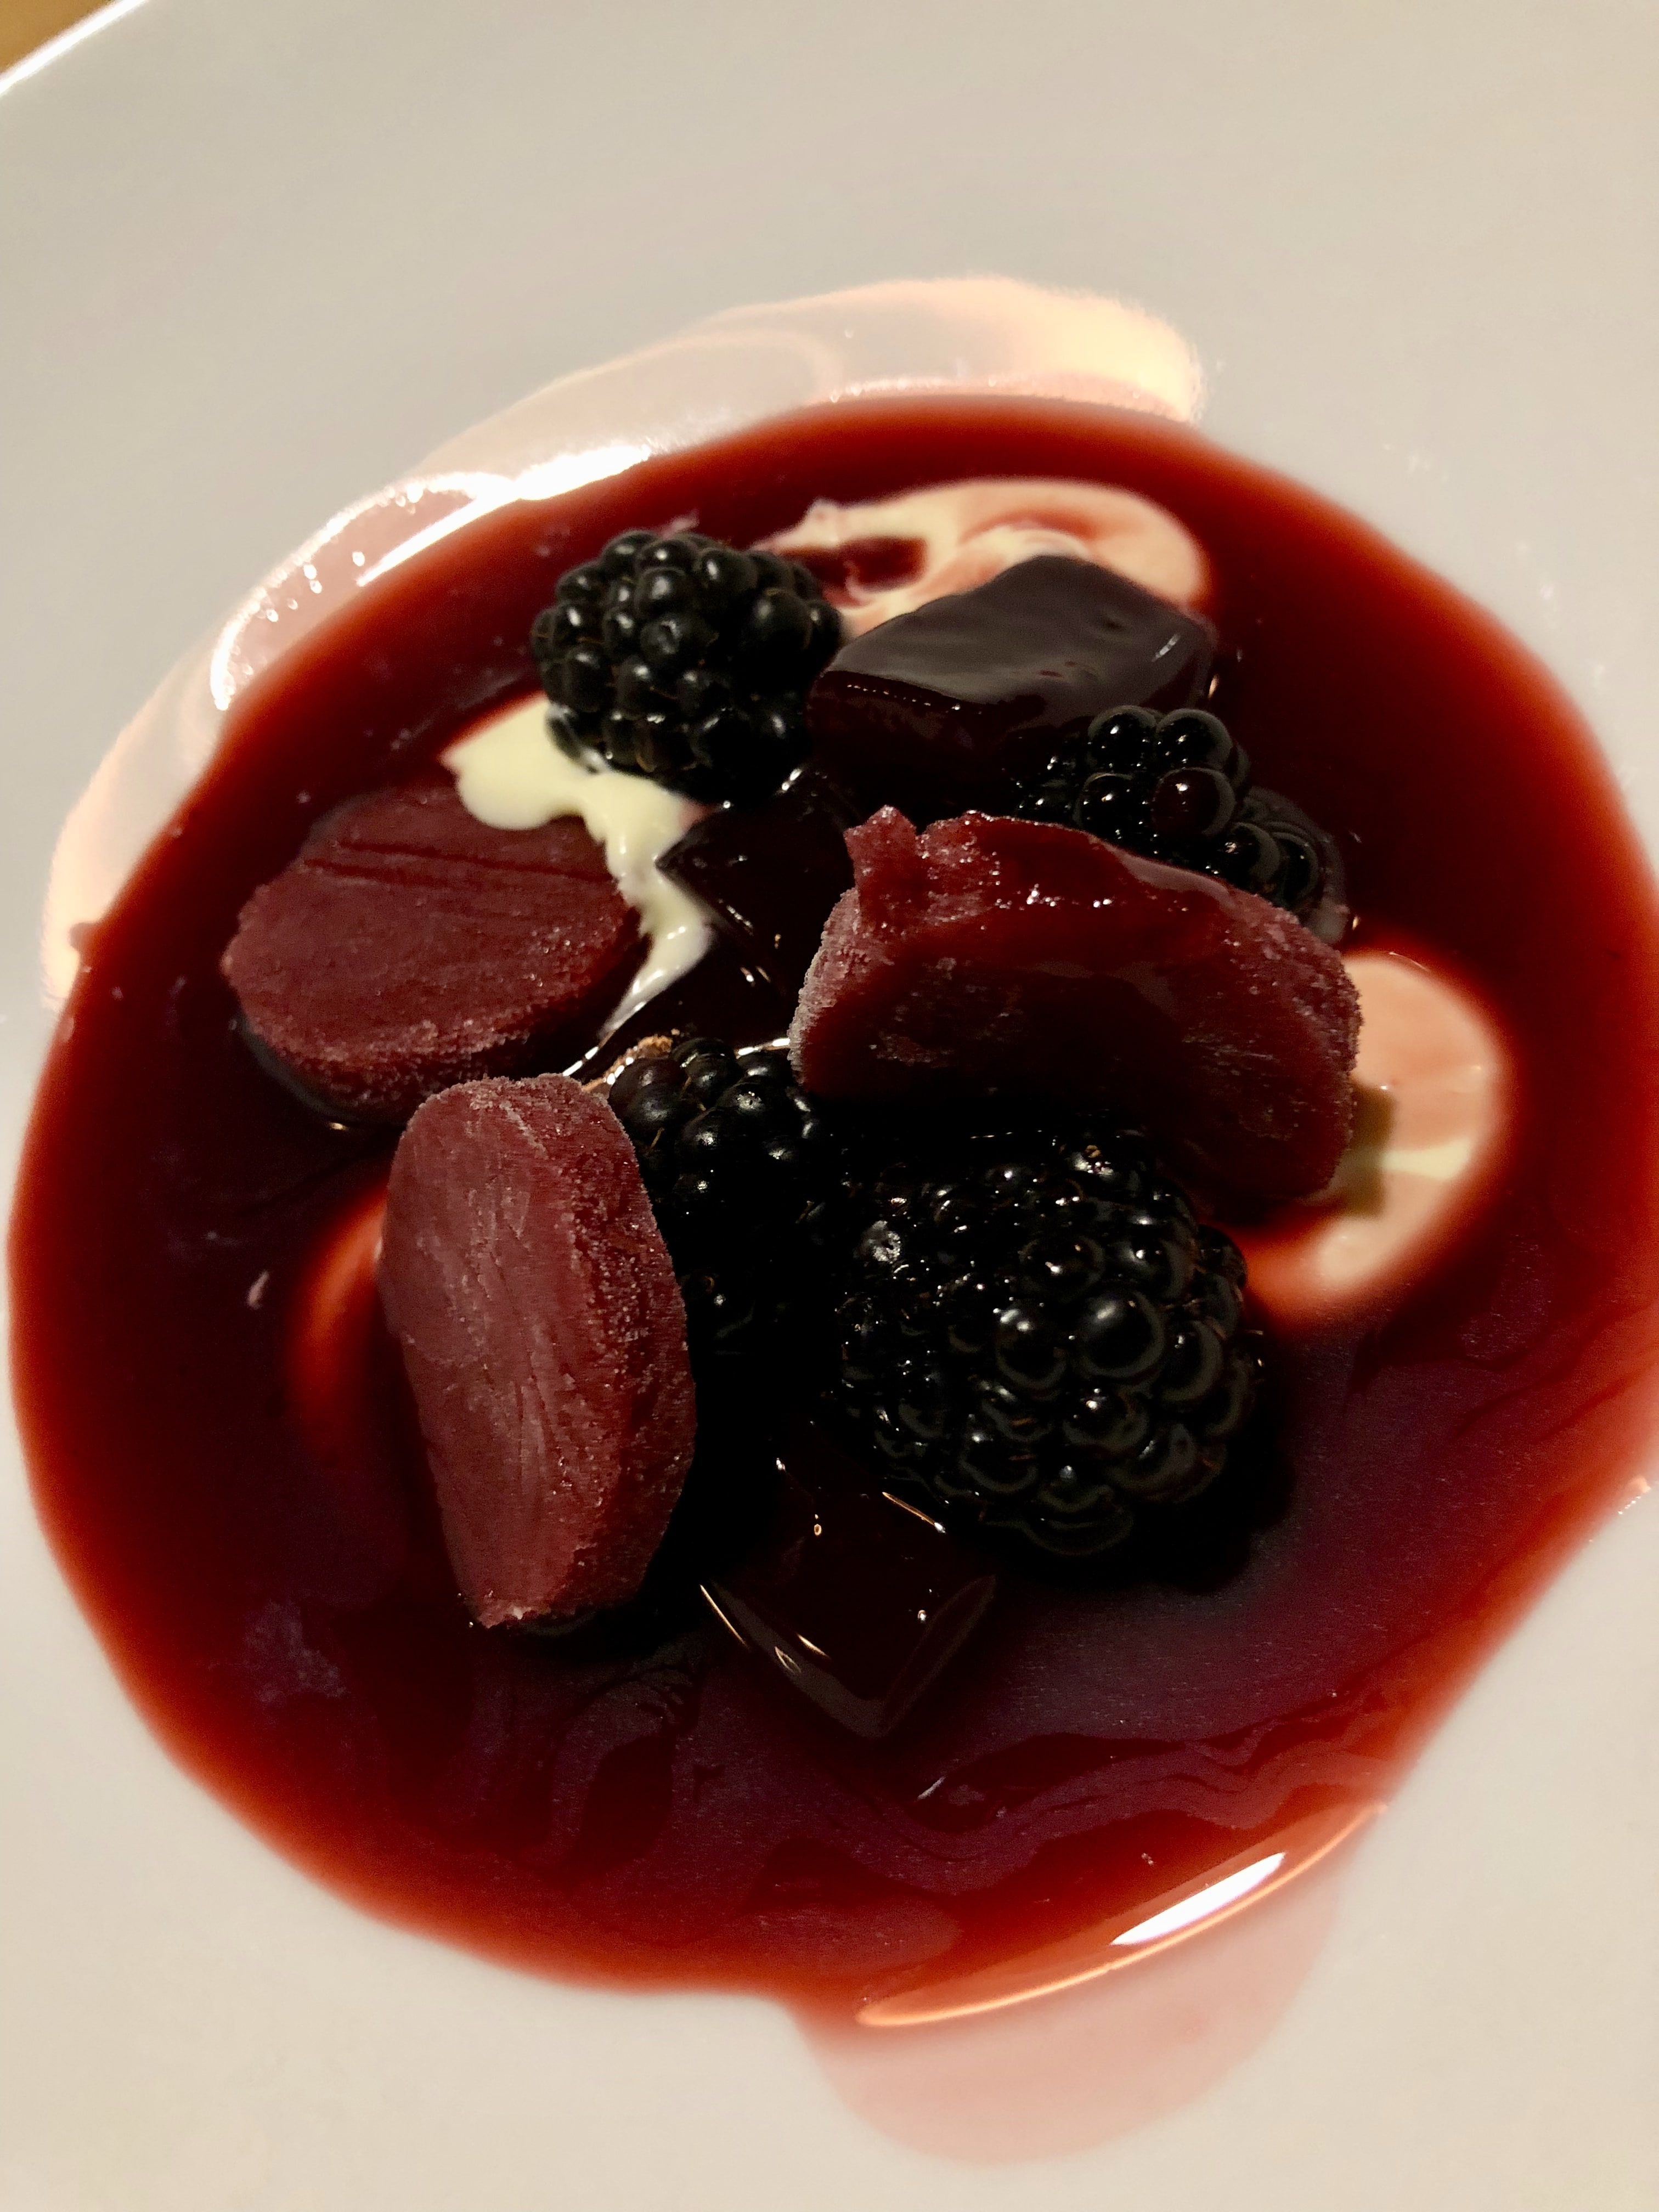 Blackberries 3 Ways in Blackberry Vinegar